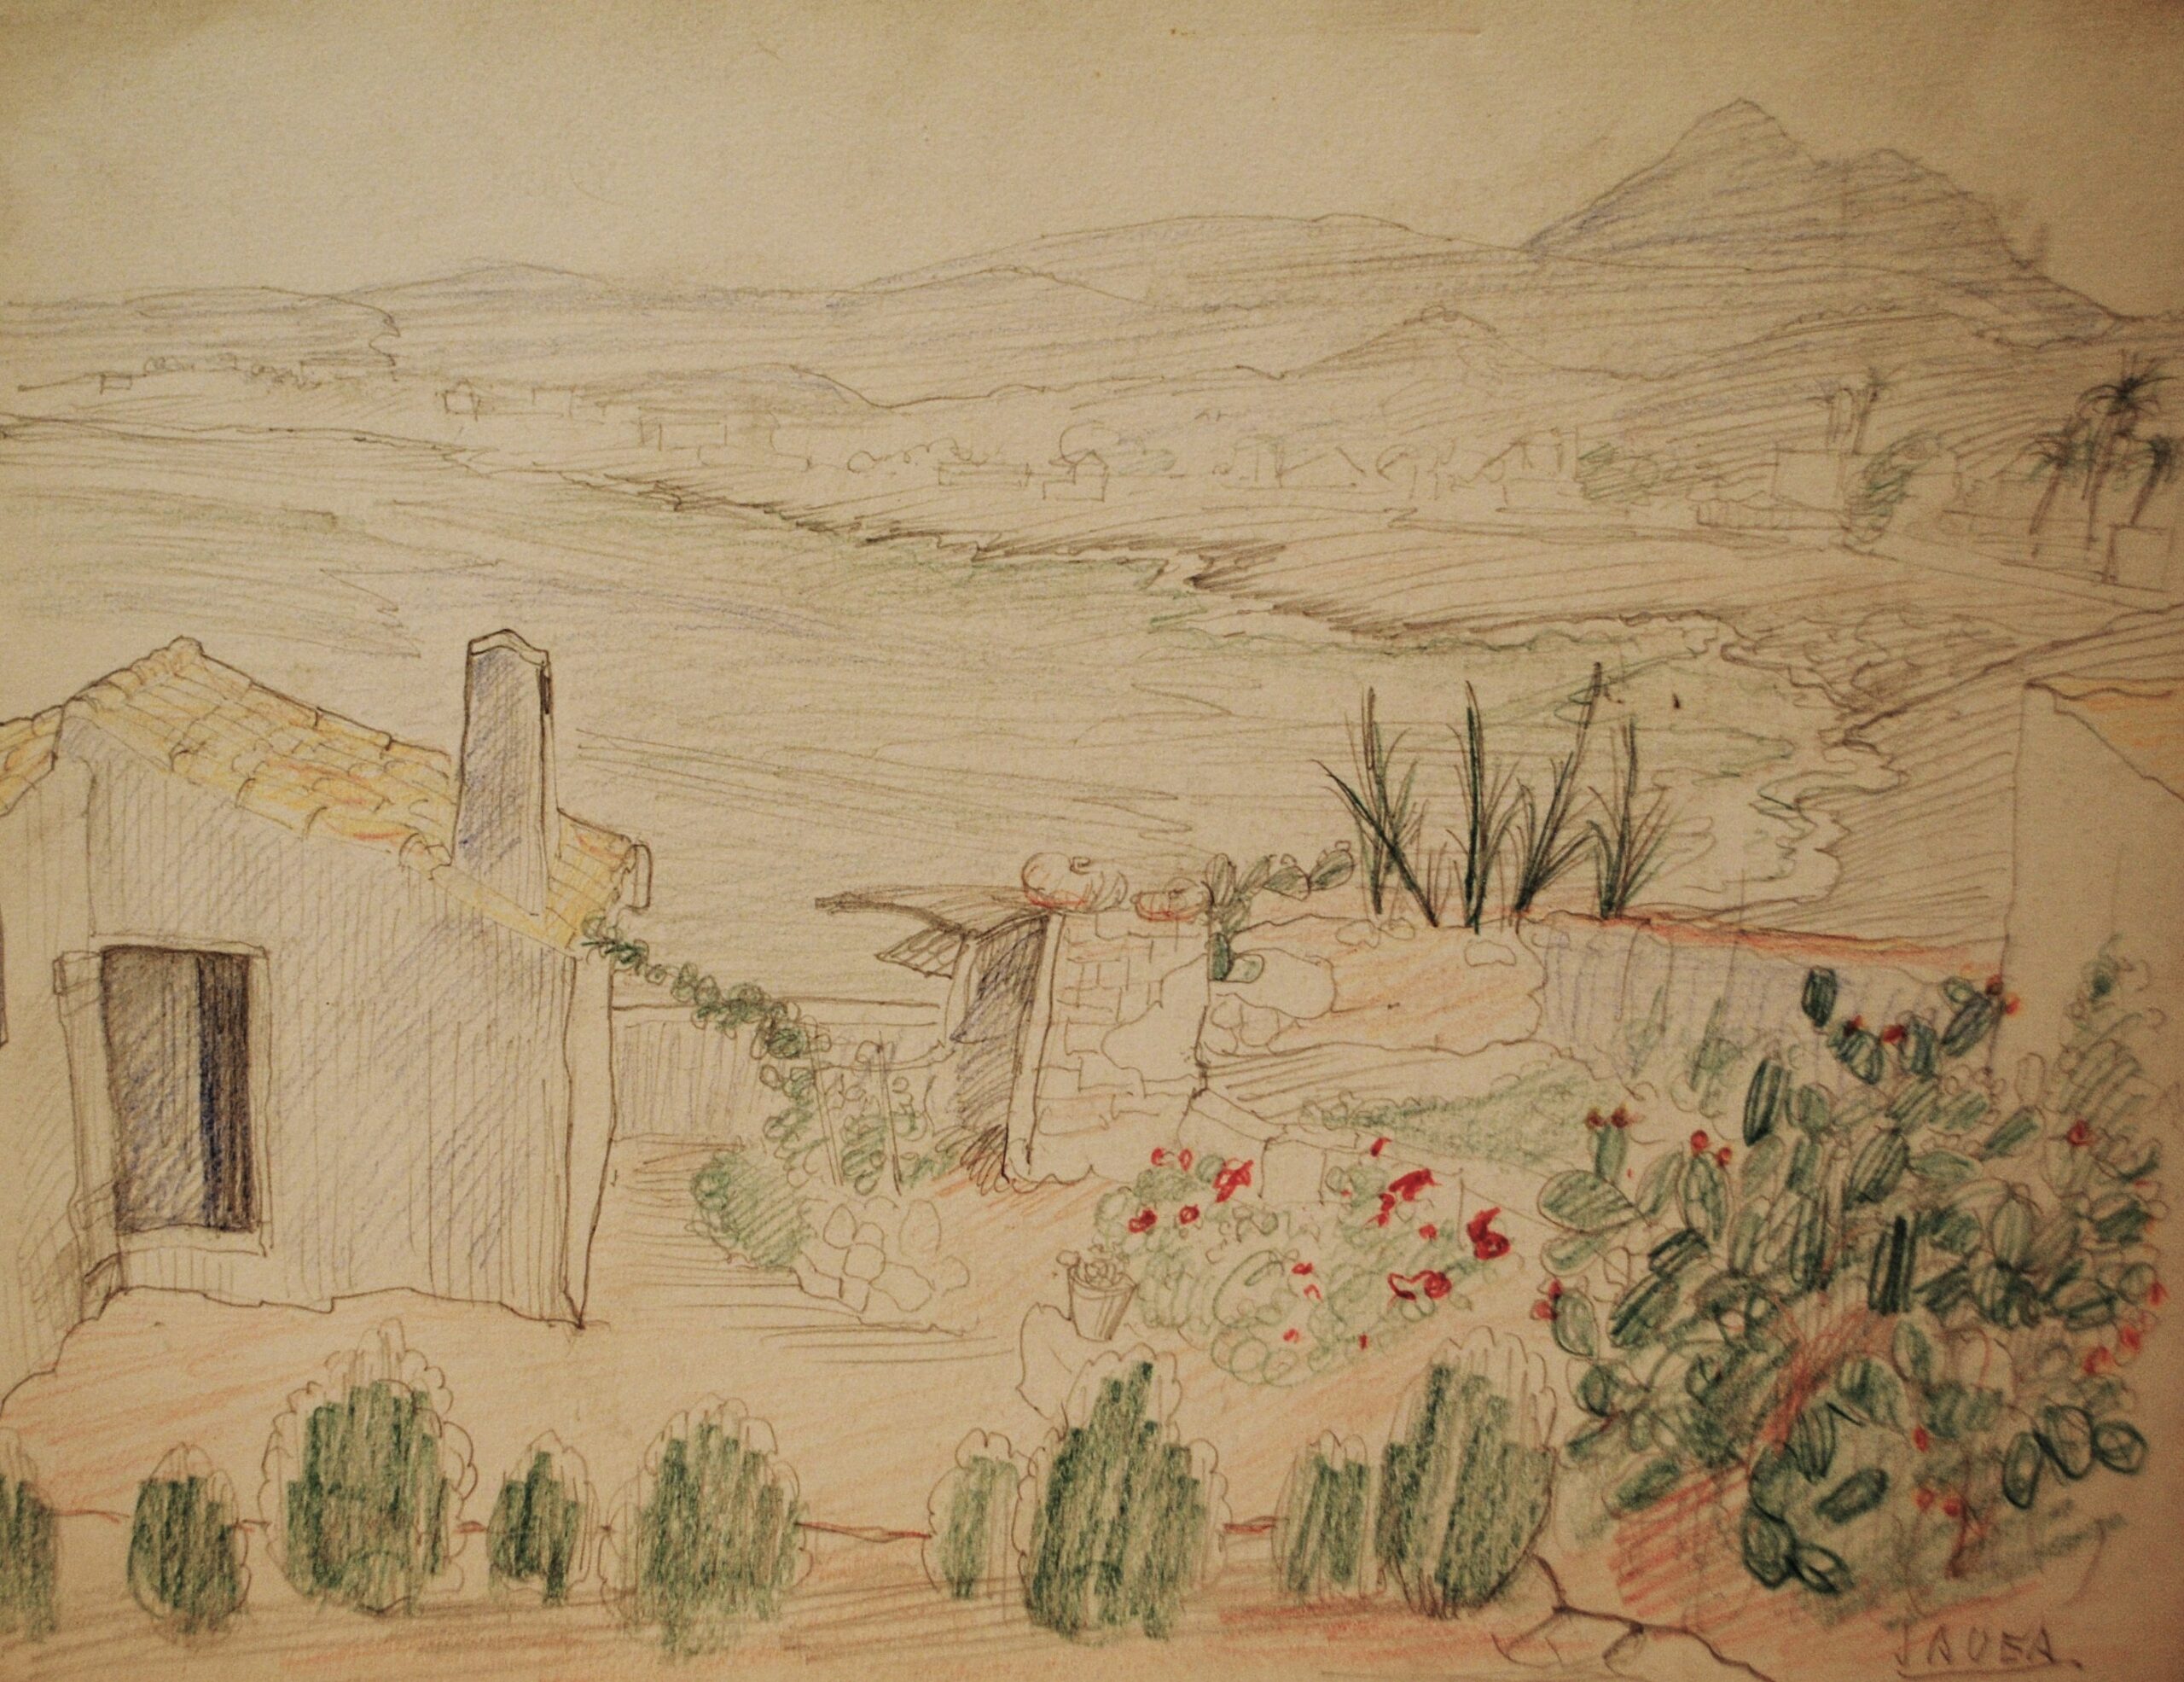 Dibujo de José Manaut titulado Casa de Campo, Jávea. Lápiz sobre papel.